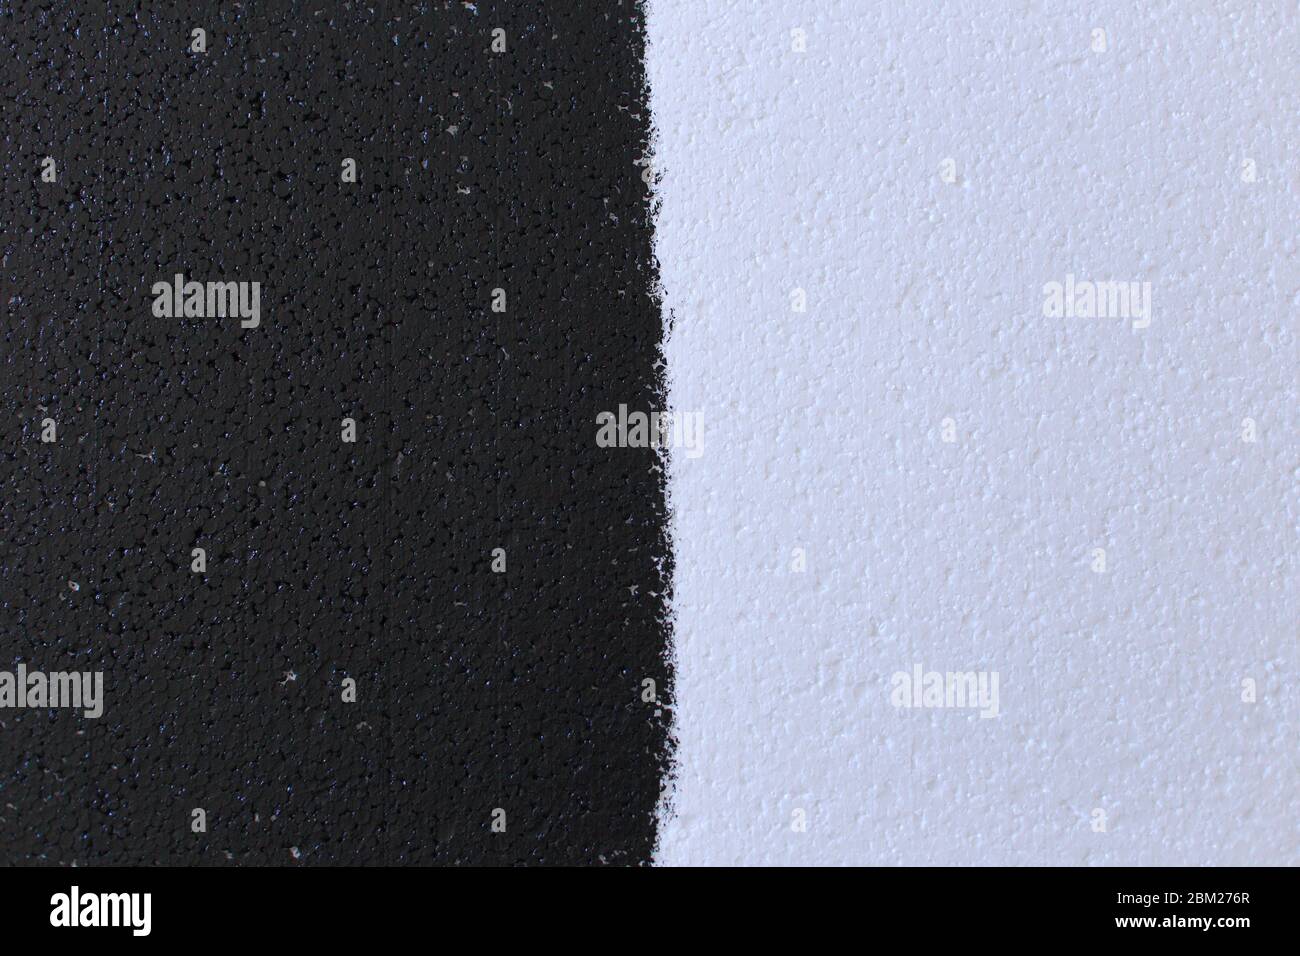 Bild von schwarzem und weißem Schaum. Schaumstruktur Stockfoto